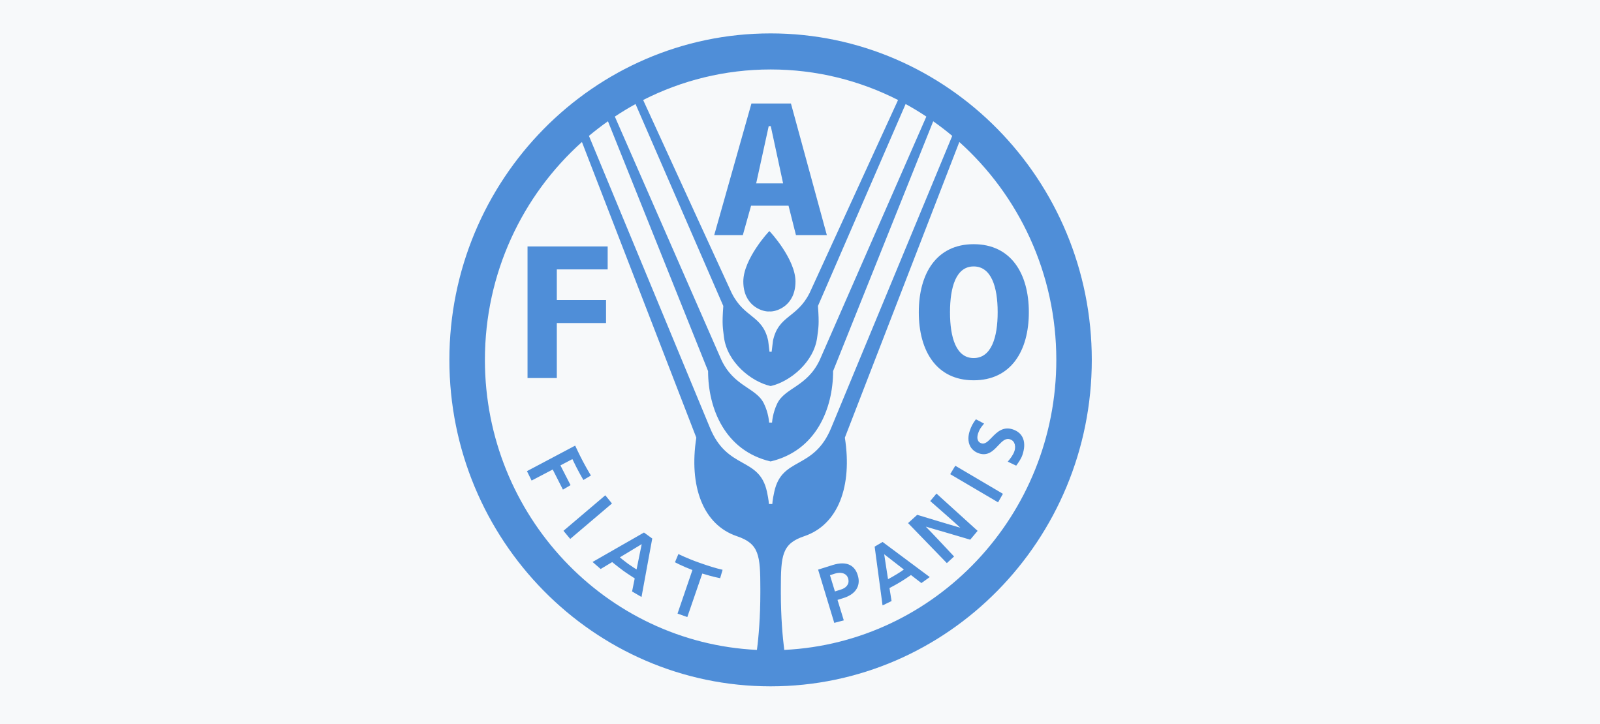 UN FAO Global Soil Partnership